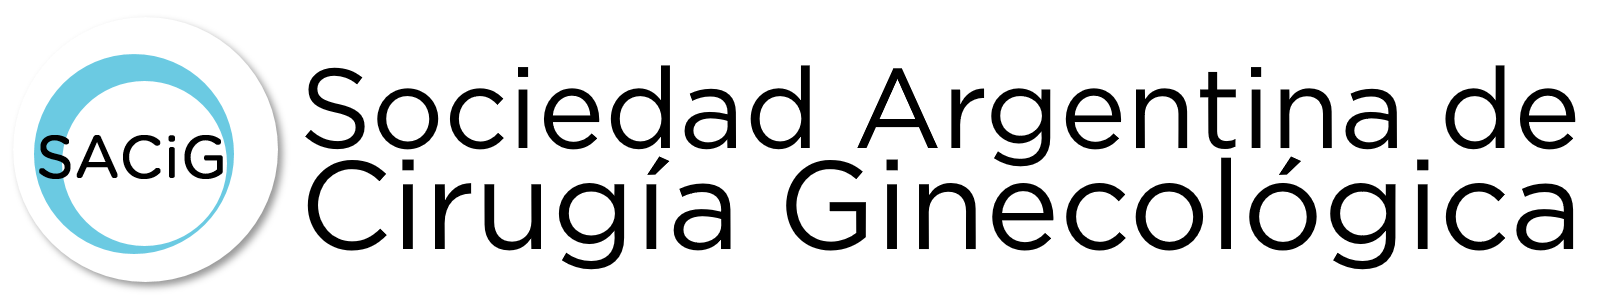 Logo SAE